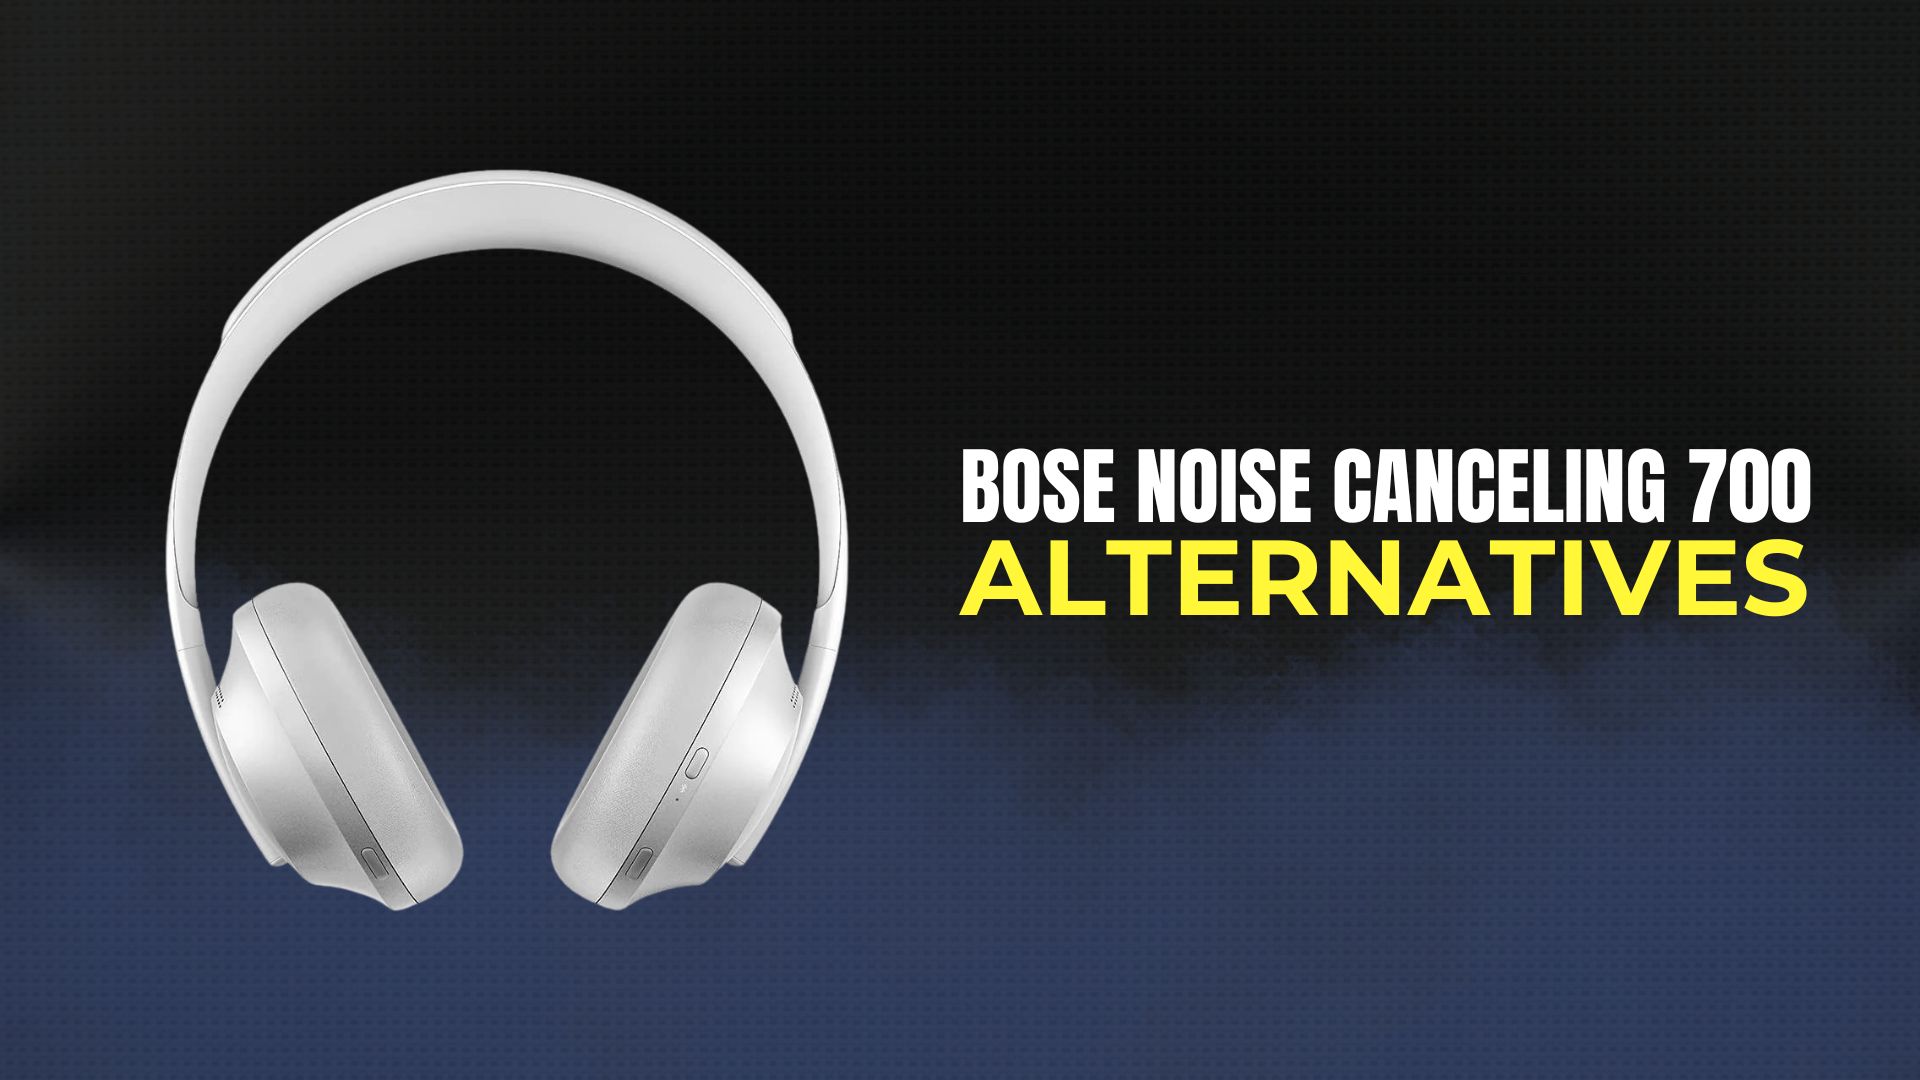 Bose Noise Canceling 700 Alternatives